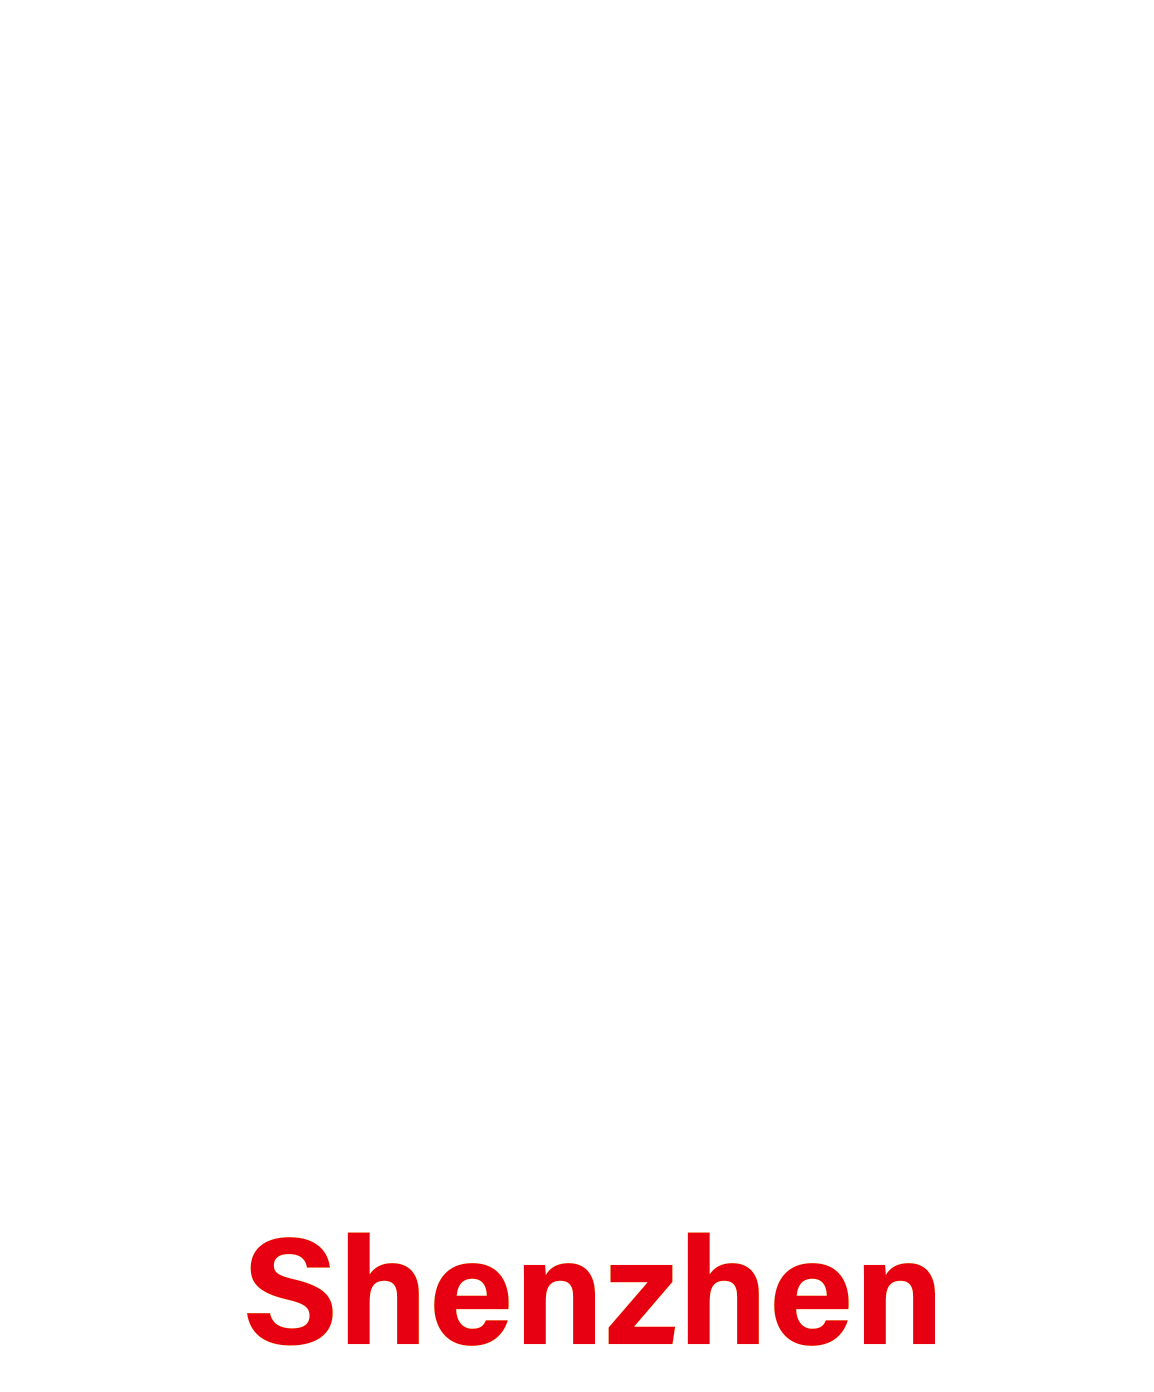 SIGN CHINA